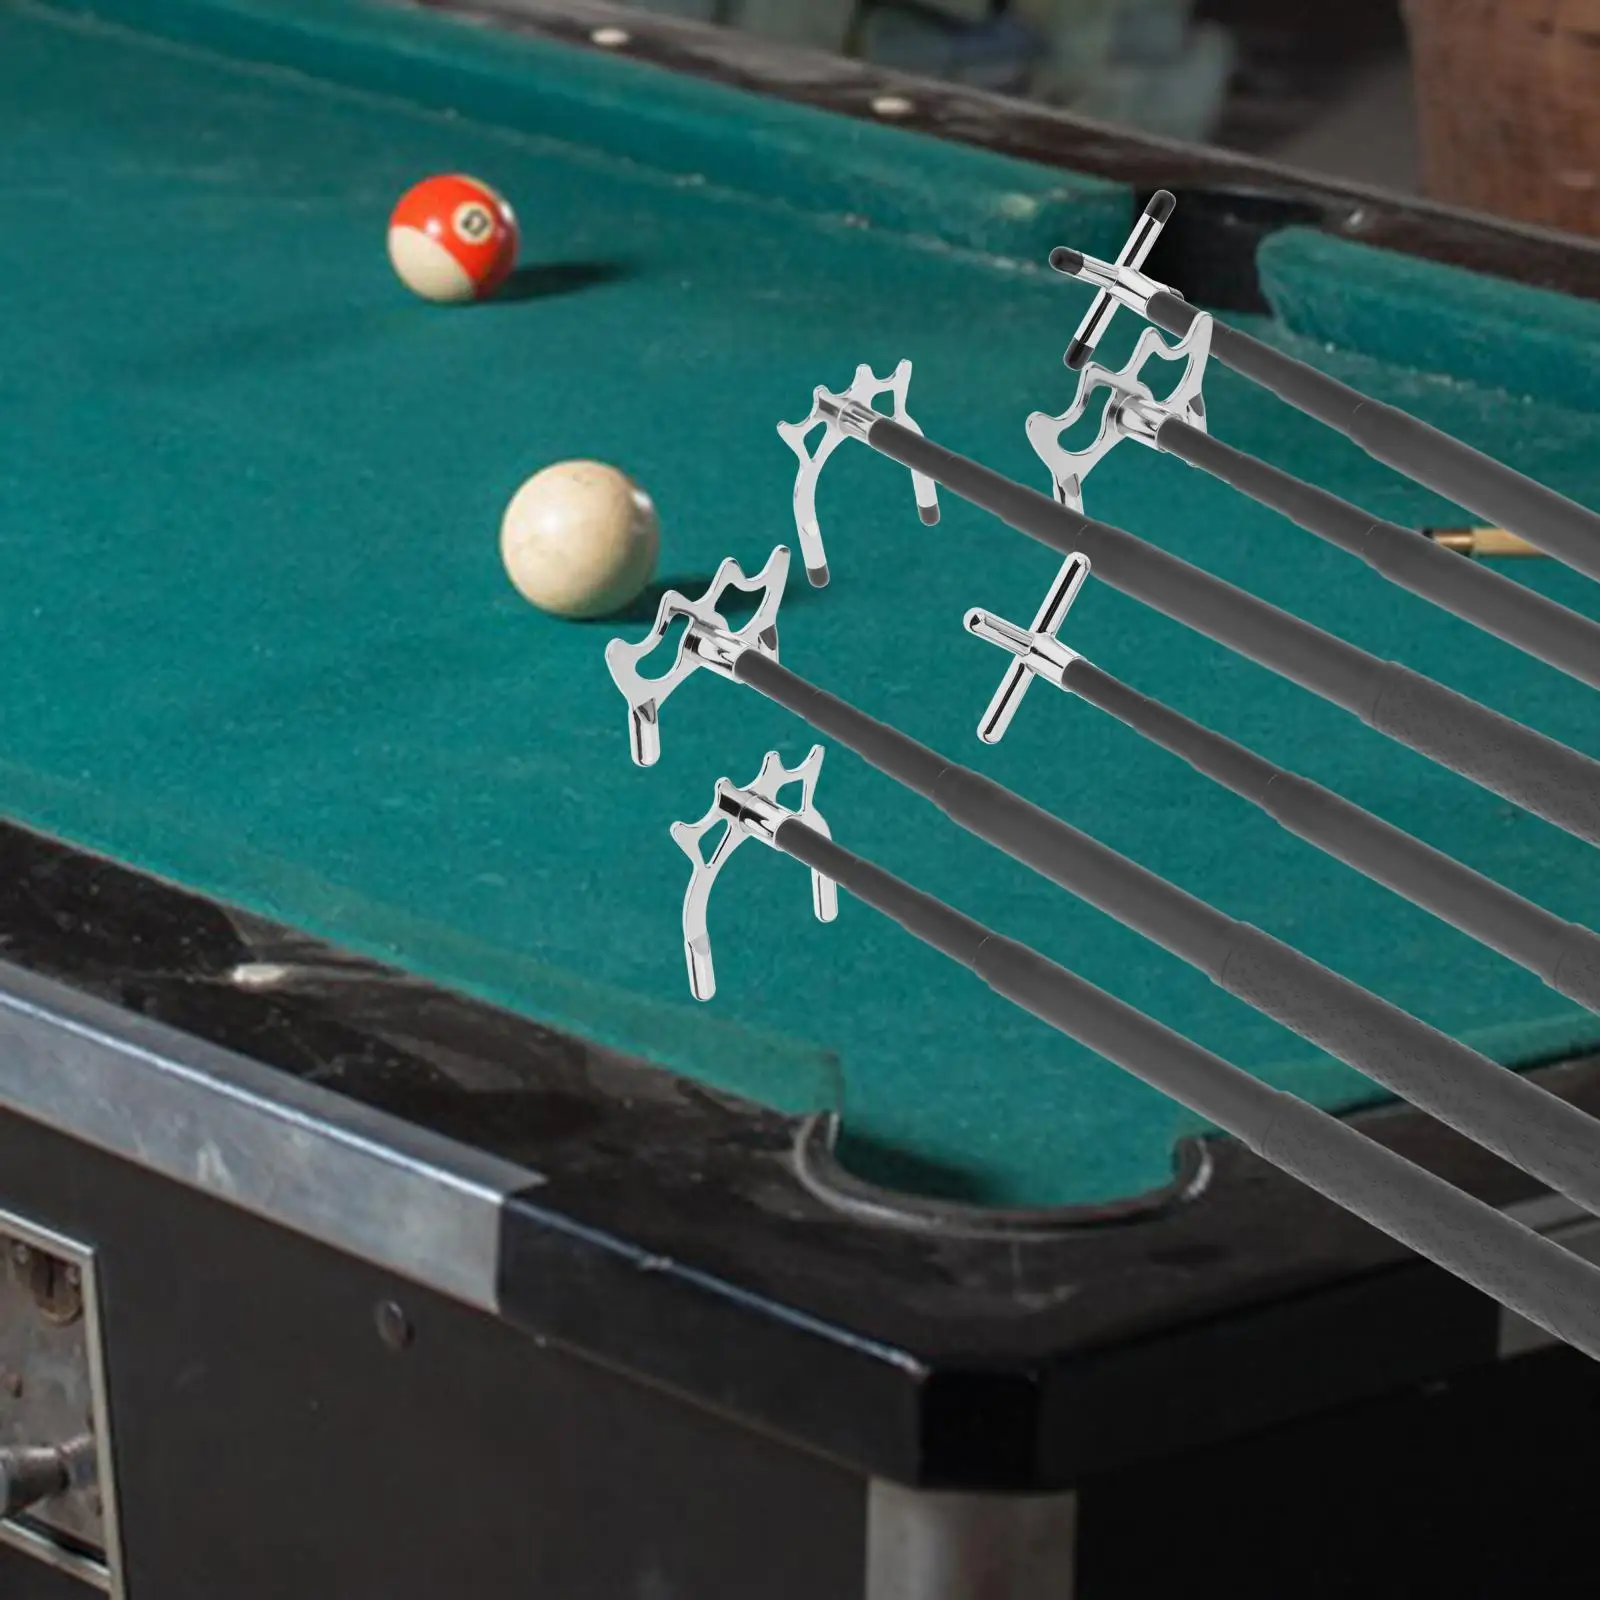 Telescopic Billiards Cue Stick Bridge for Pool Table Training Indoor Game